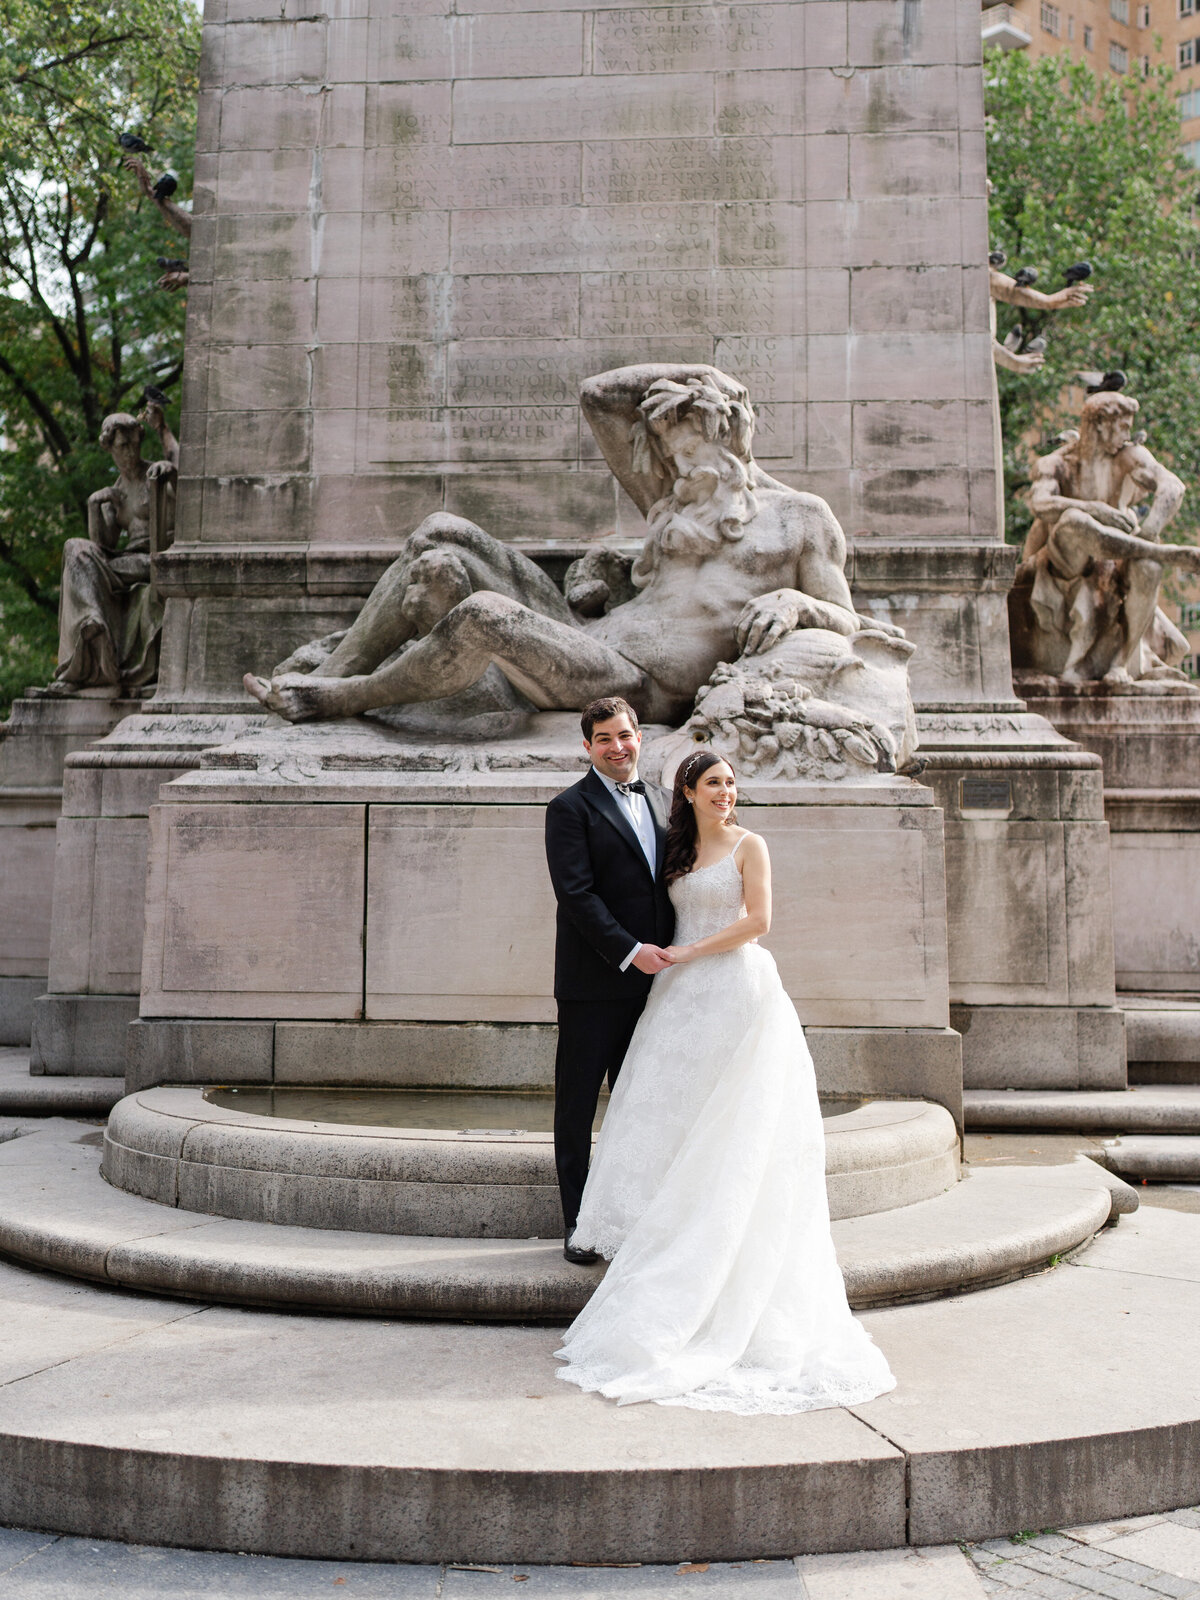 mandarinorientalwedding-newyorkwedding-nycwedding-luxurywedding-felixfeyginphotography-019